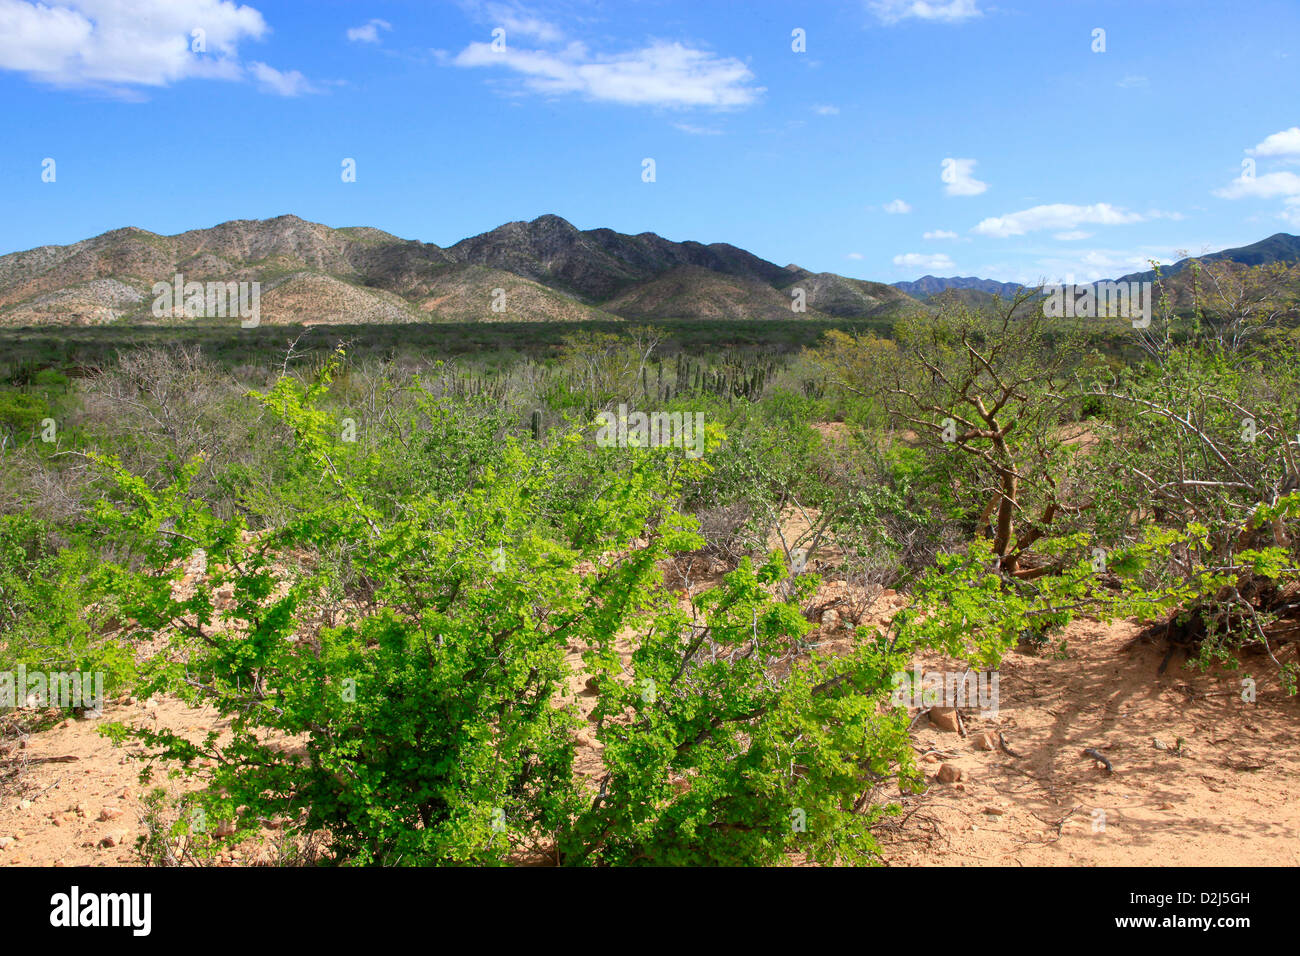 A lush landscape at Cabo Pulmo, Mexico. Stock Photo